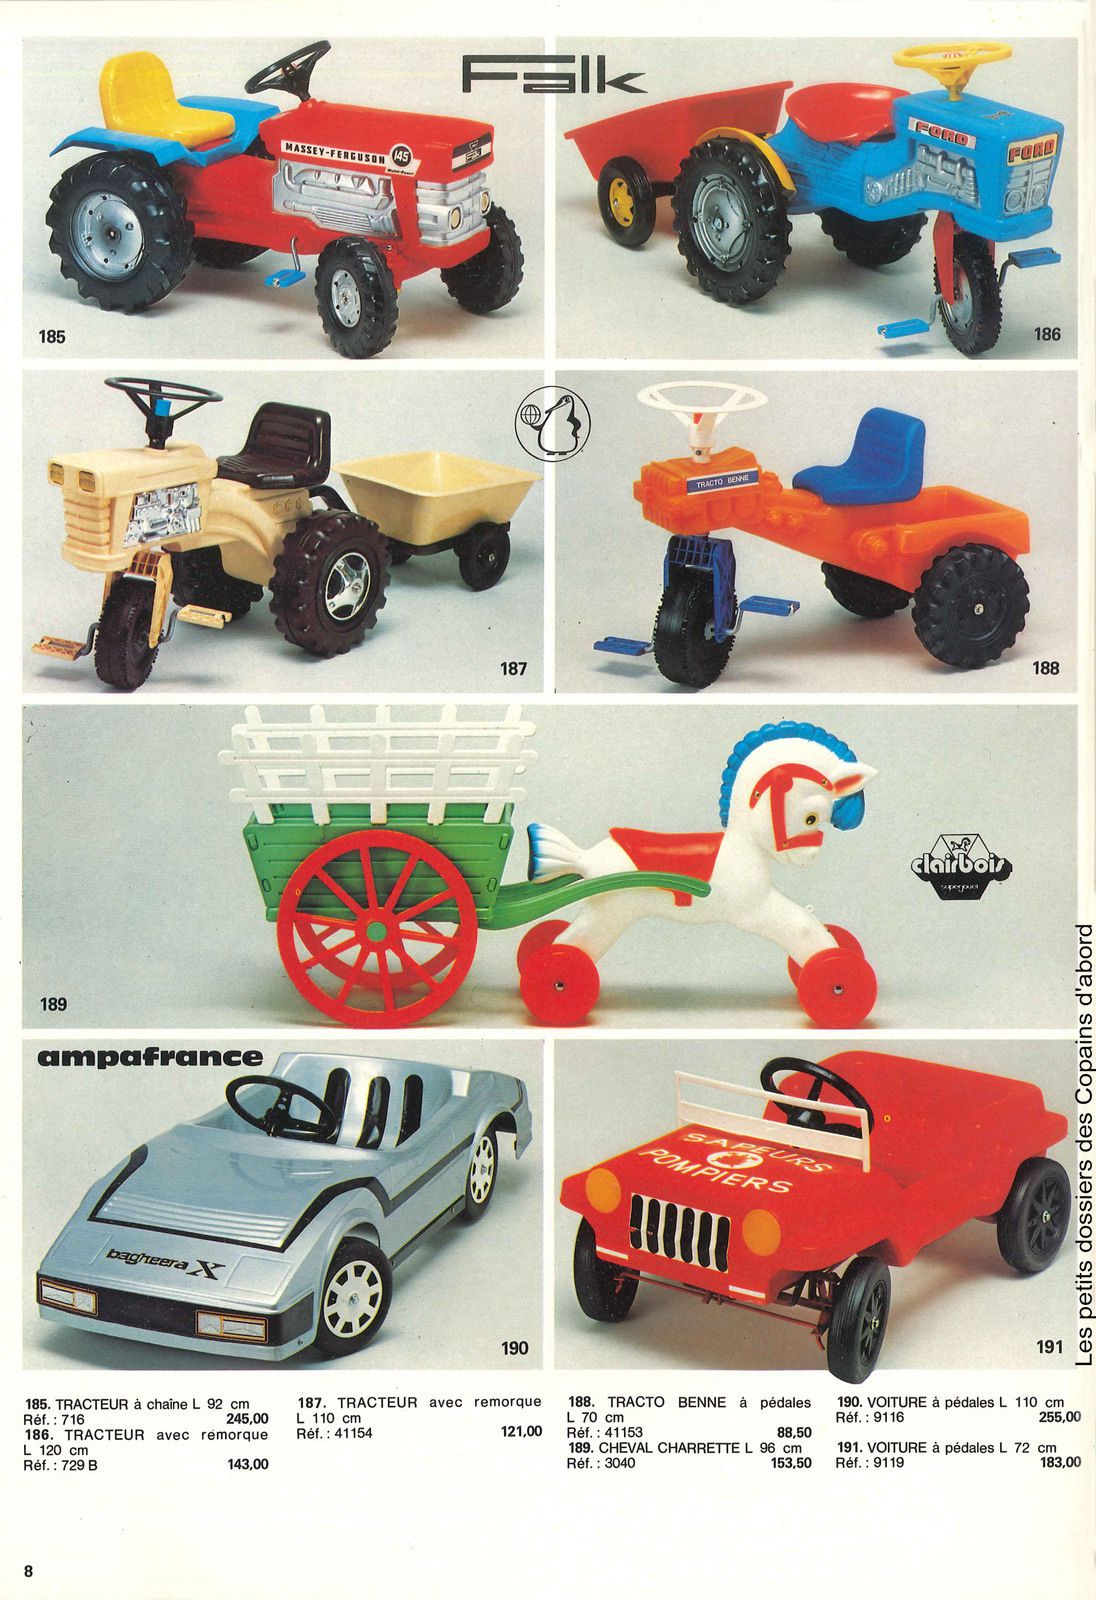 Le catalogue de jouets Axe de 1979 par Nath-Didile